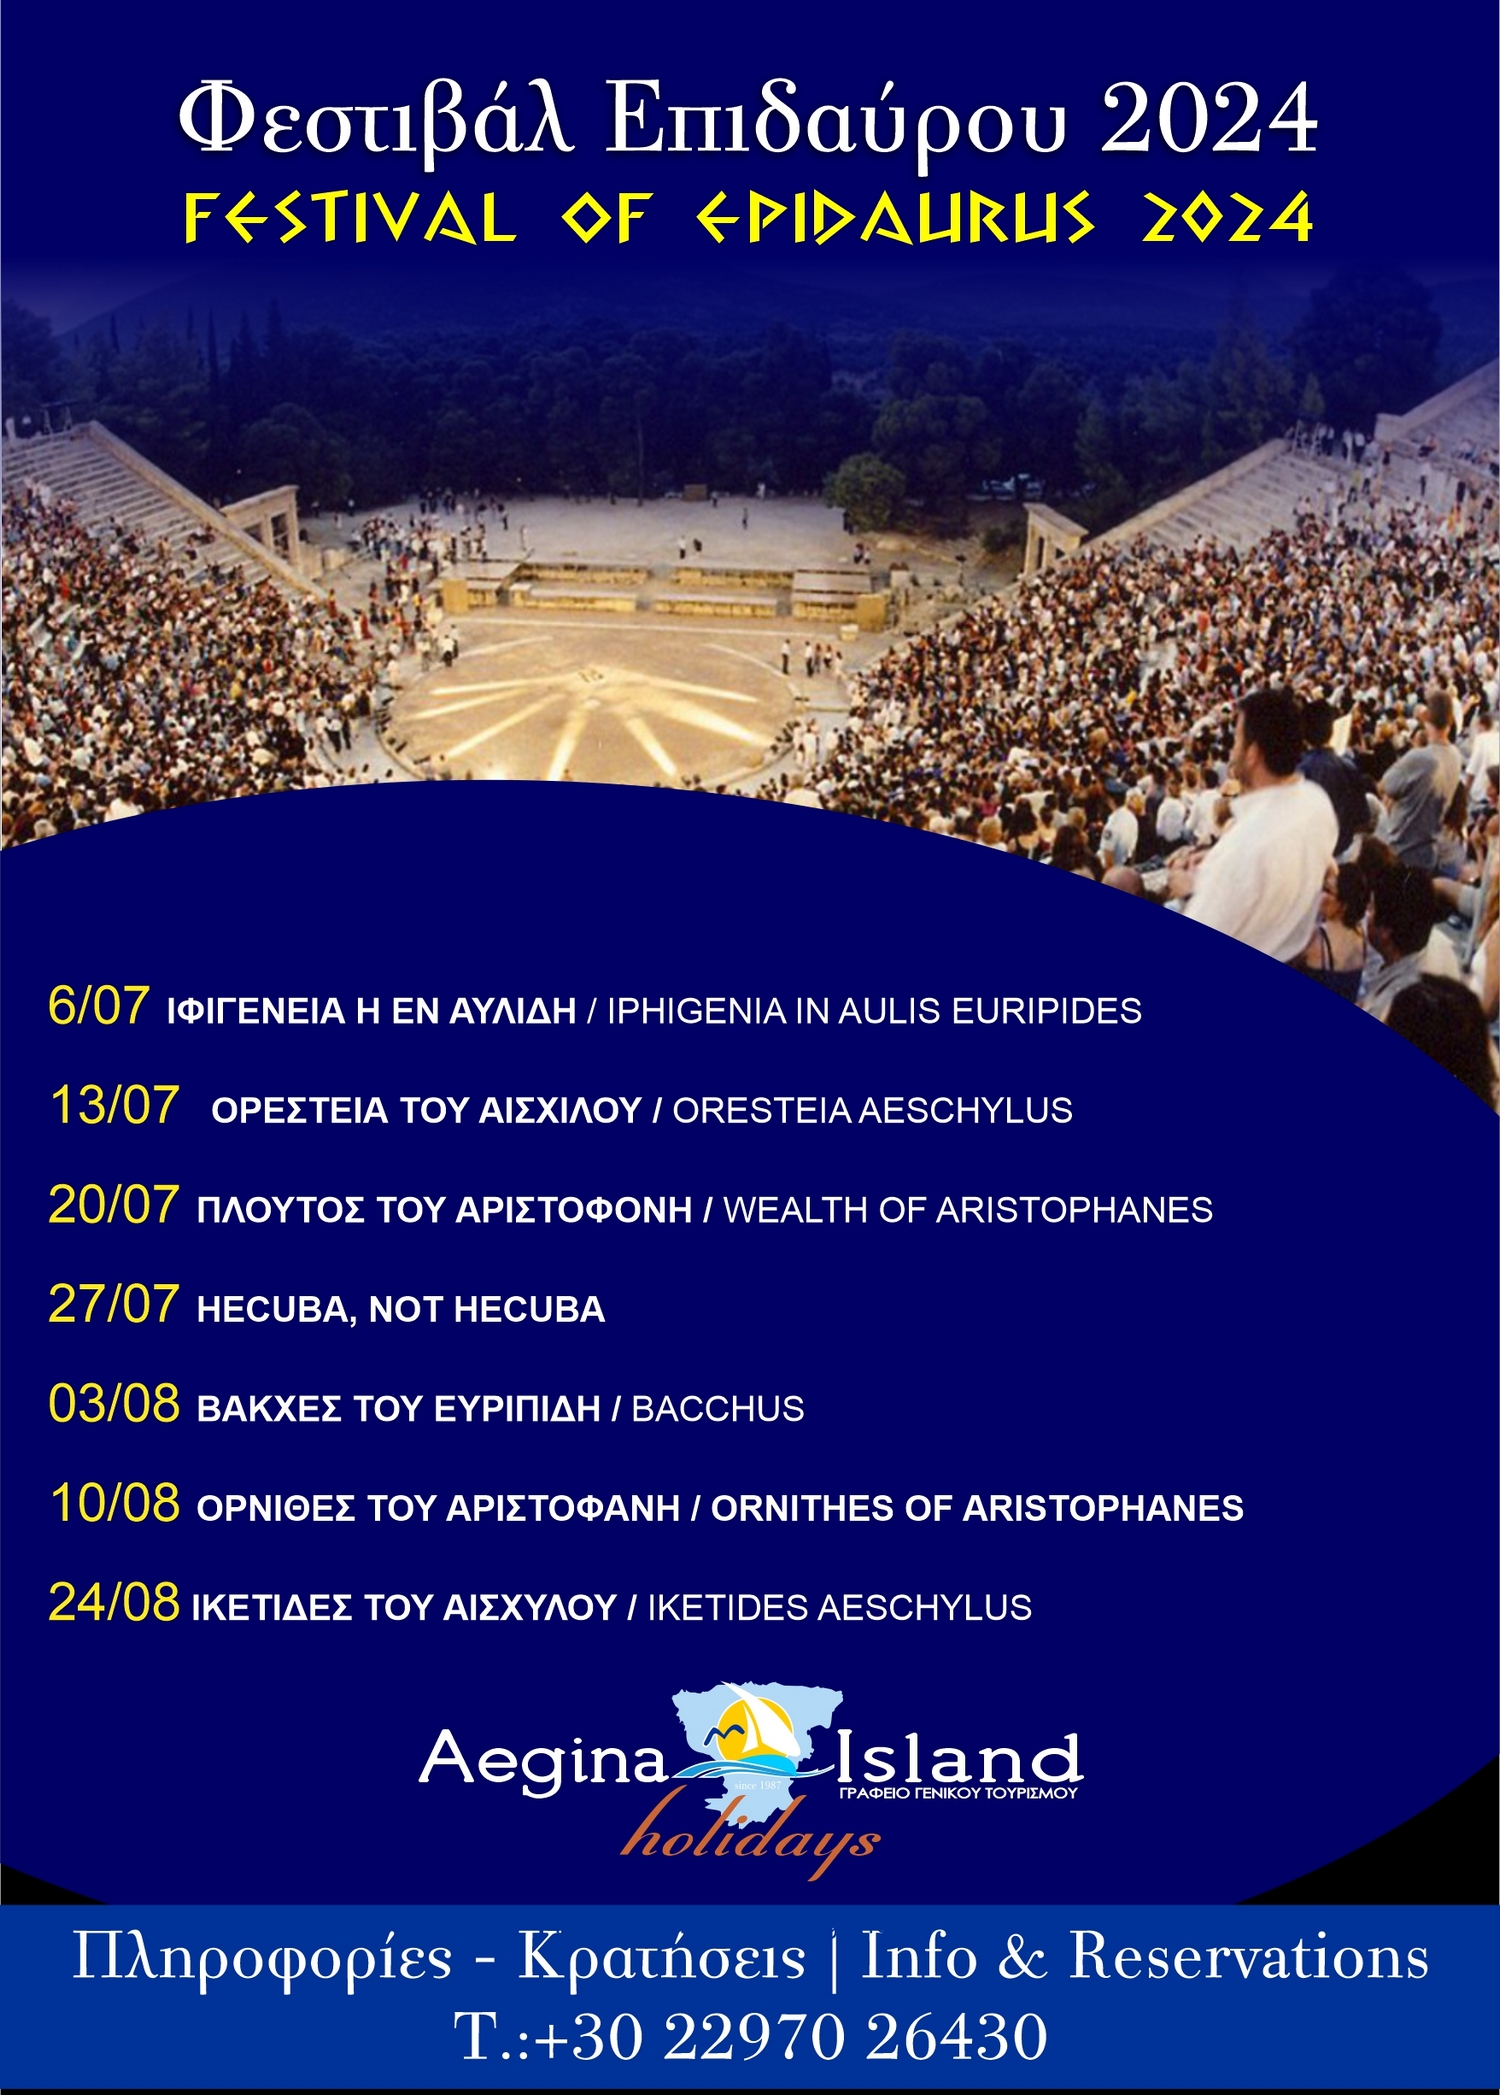 Φεστιβάλ Επιδαύρου 2024 - Πρόγραμμα παραστάσεων